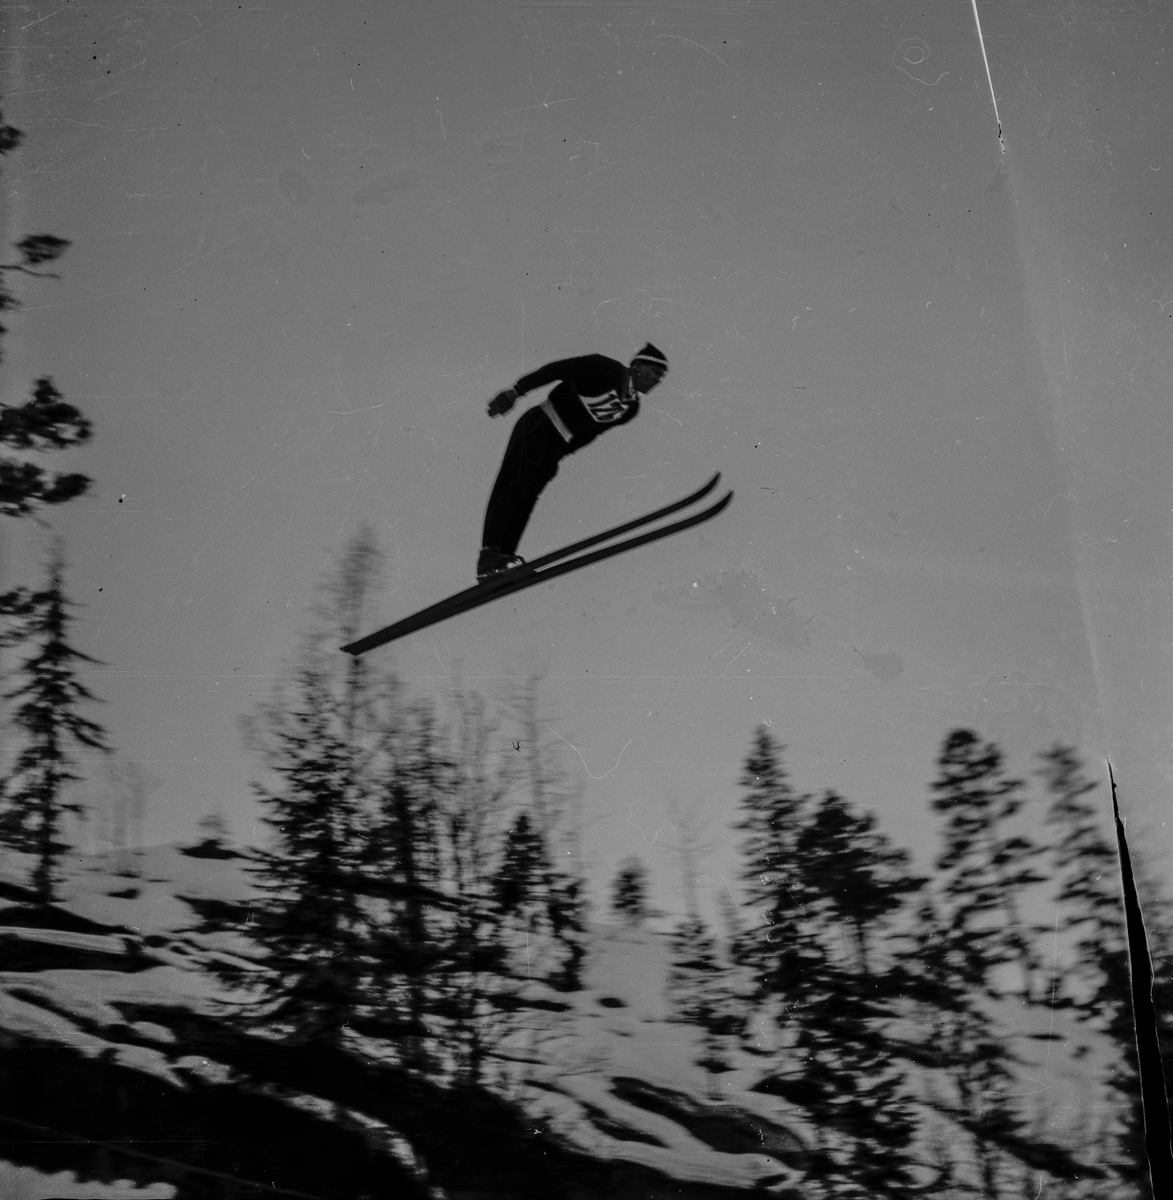 Ski jumping at the Hannibalbakken